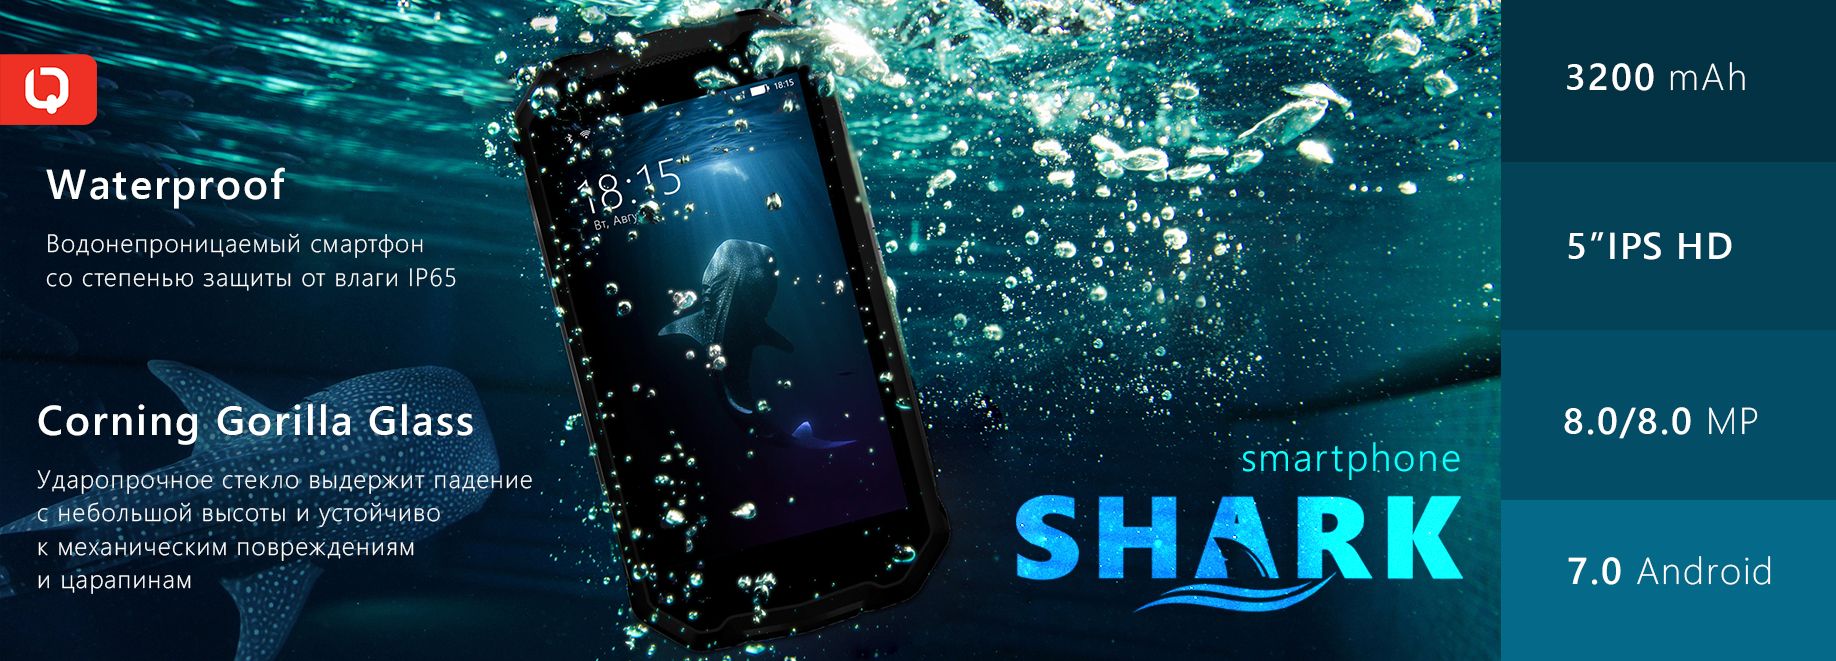 Смартфон с повышенной влагозащитой - BQ-5033 Shark!